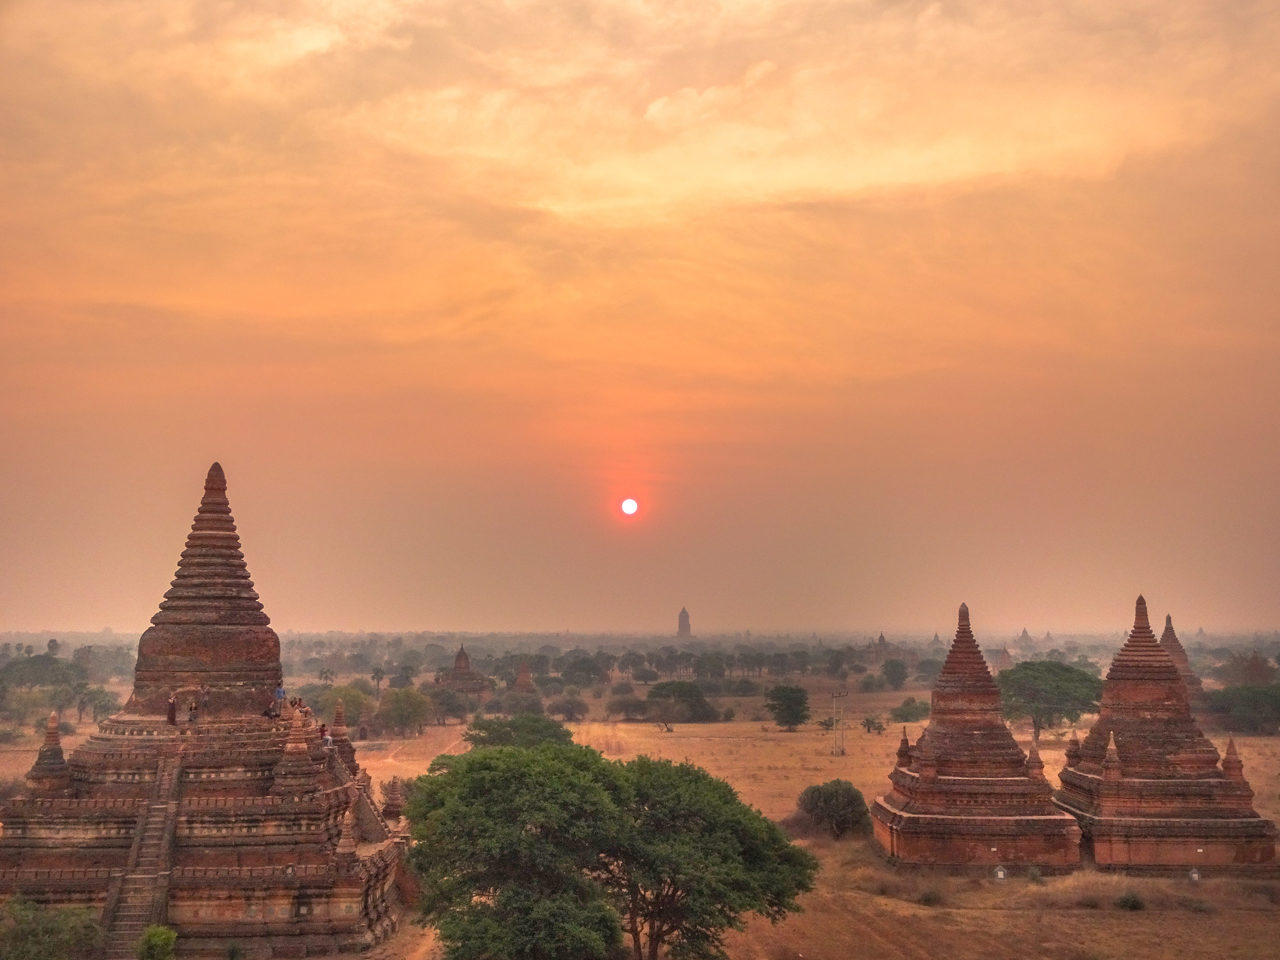 Sunrise in Bagan in Myanmar